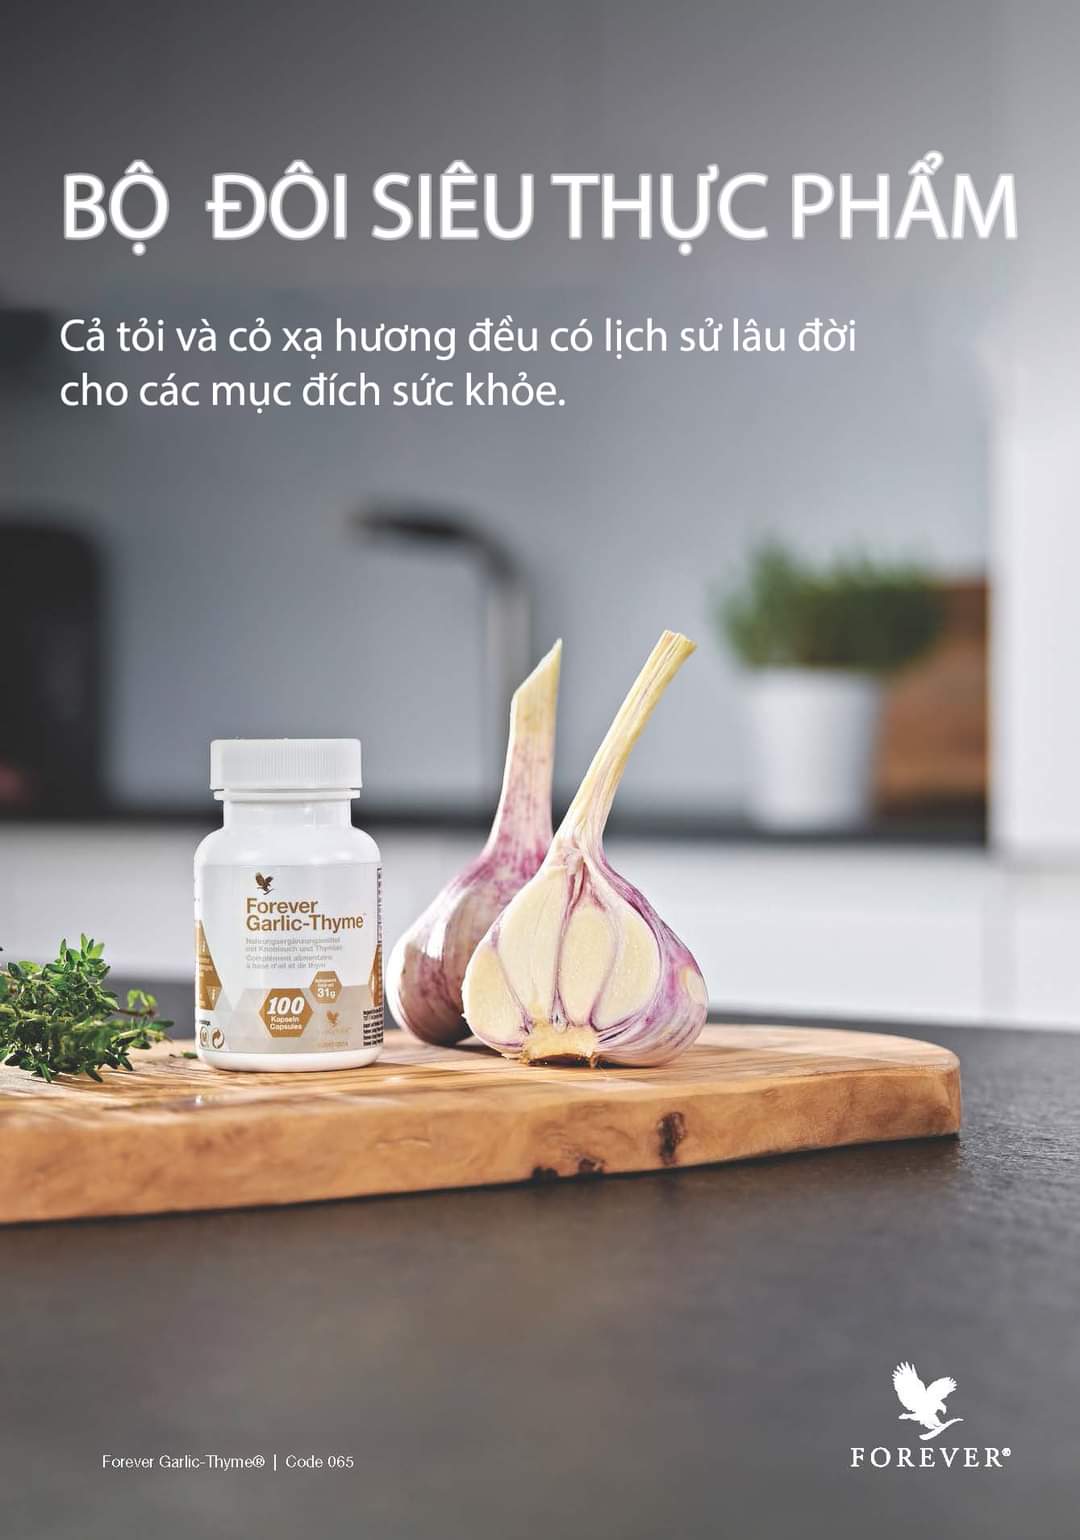 Forever Garlic-Thyme -siêu dinh dưỡng từ thiên nhiên.